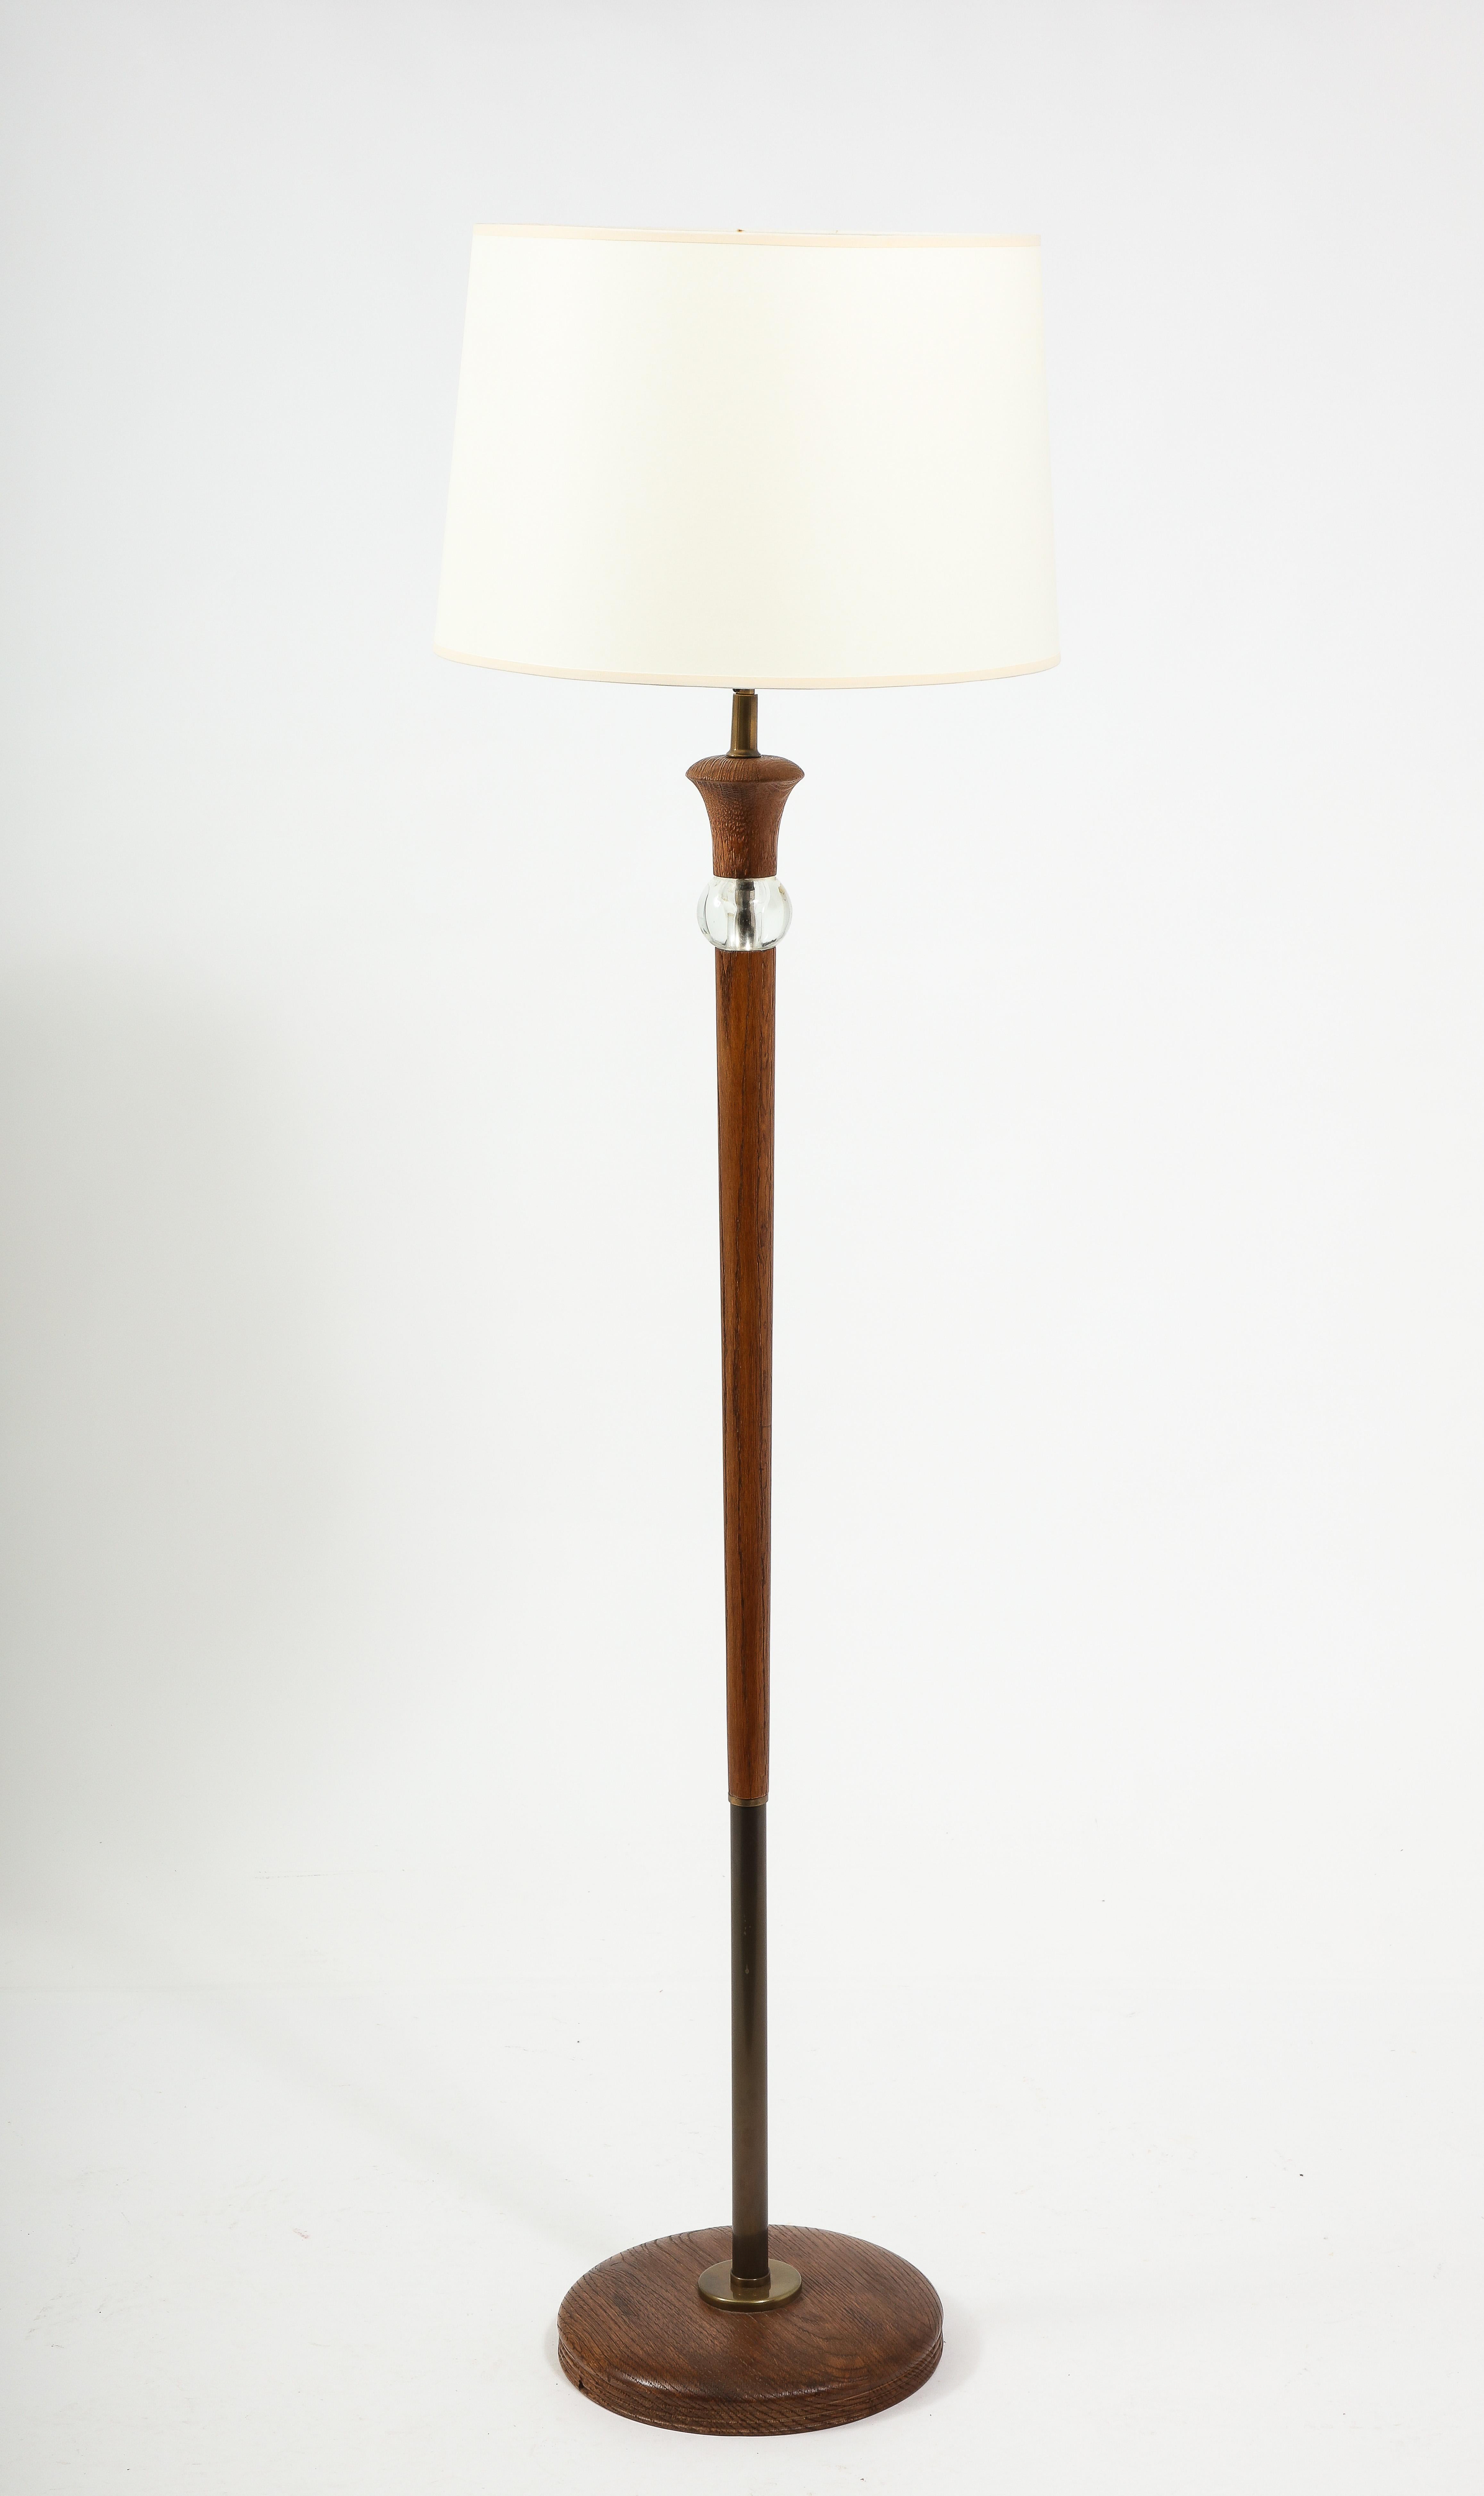 Elegant lampadaire en chêne et verre avec détails en laiton.

Base 50x12